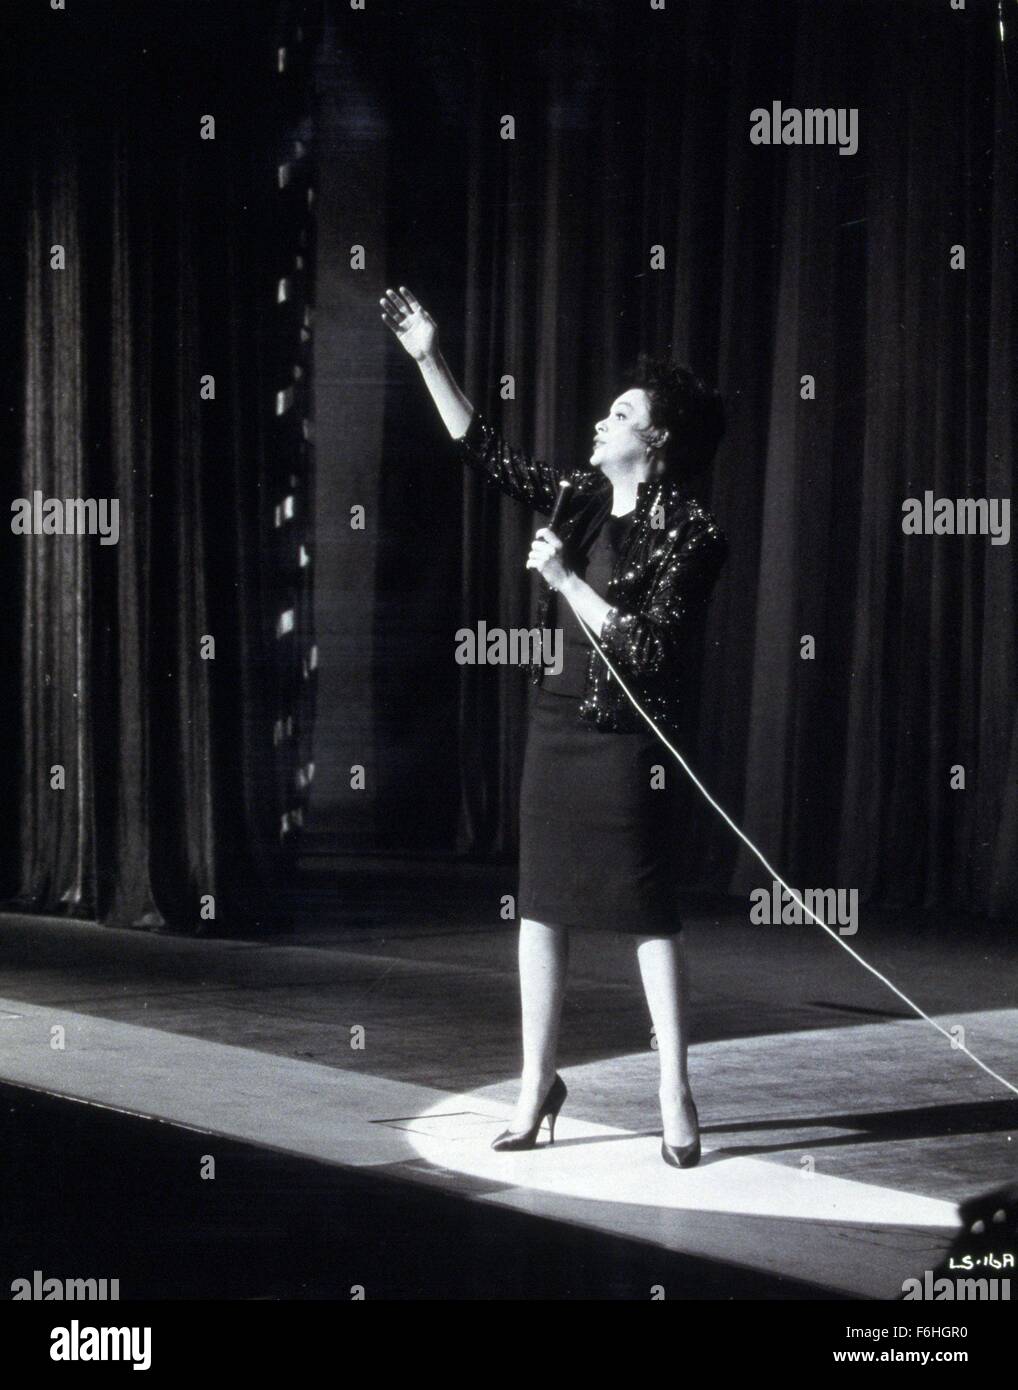 Filmtitel 1963: Ich könnte gehen auf Gesang, Regie: RONALD NEAME, Studio: UA, im Bild: JUDY GARLAND. (Bild Kredit: SNAP) Stockfoto